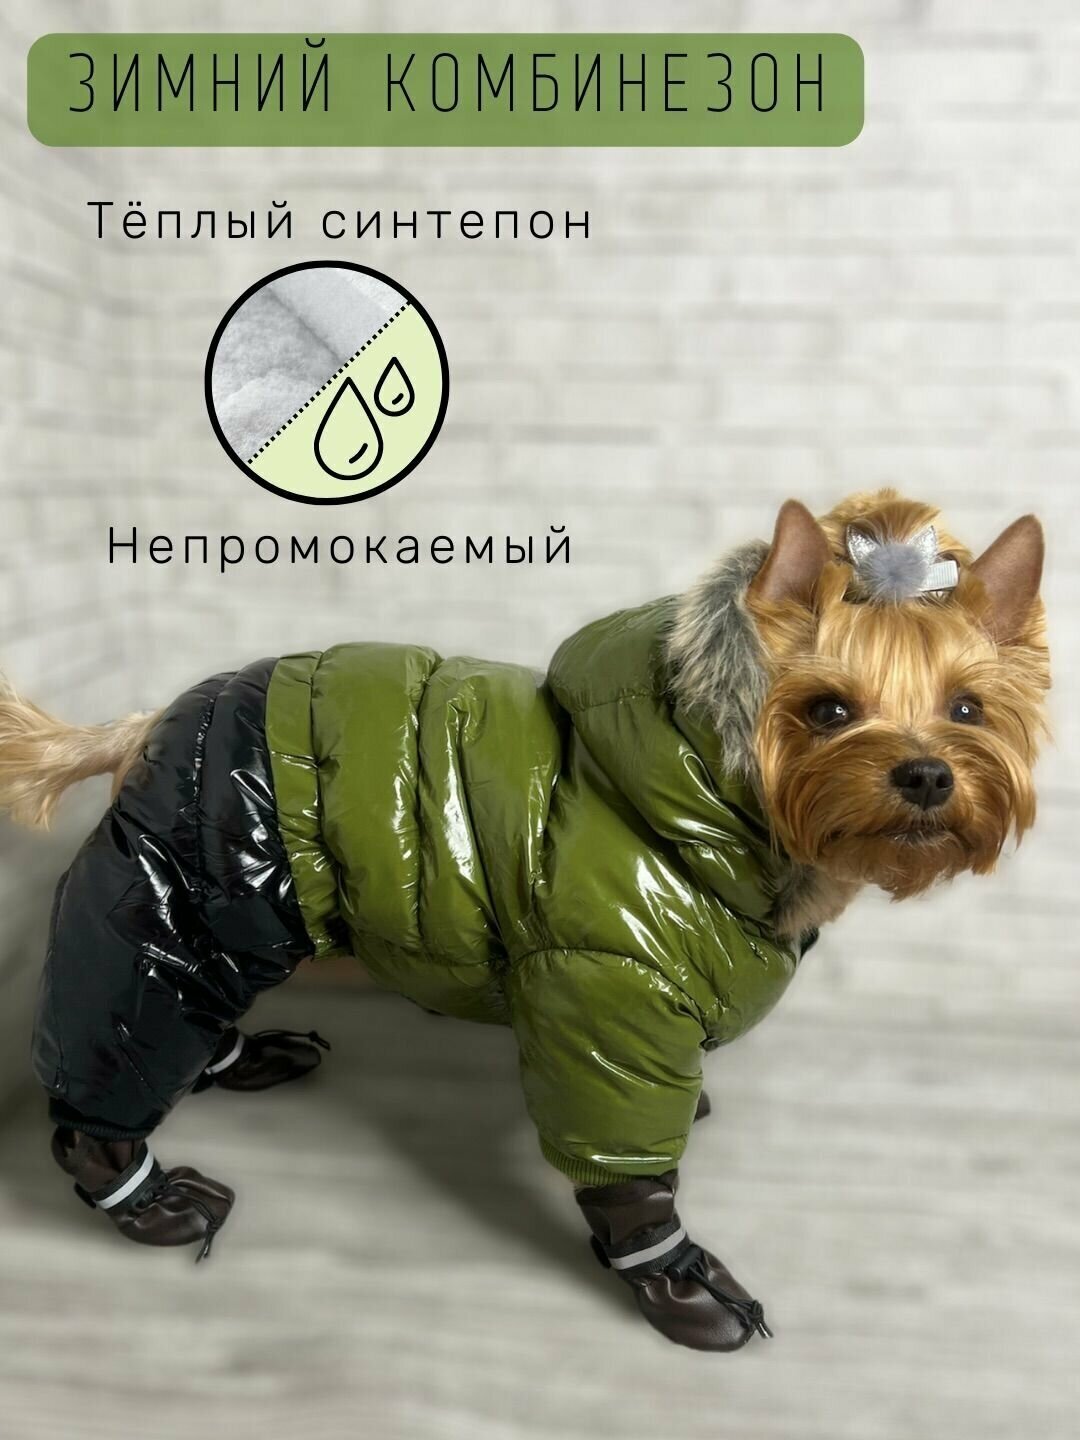 Зимний комбинезон для собак всех пород / Непромокаемый / Плотный синтепон / Размер 18 / Цвет хаки